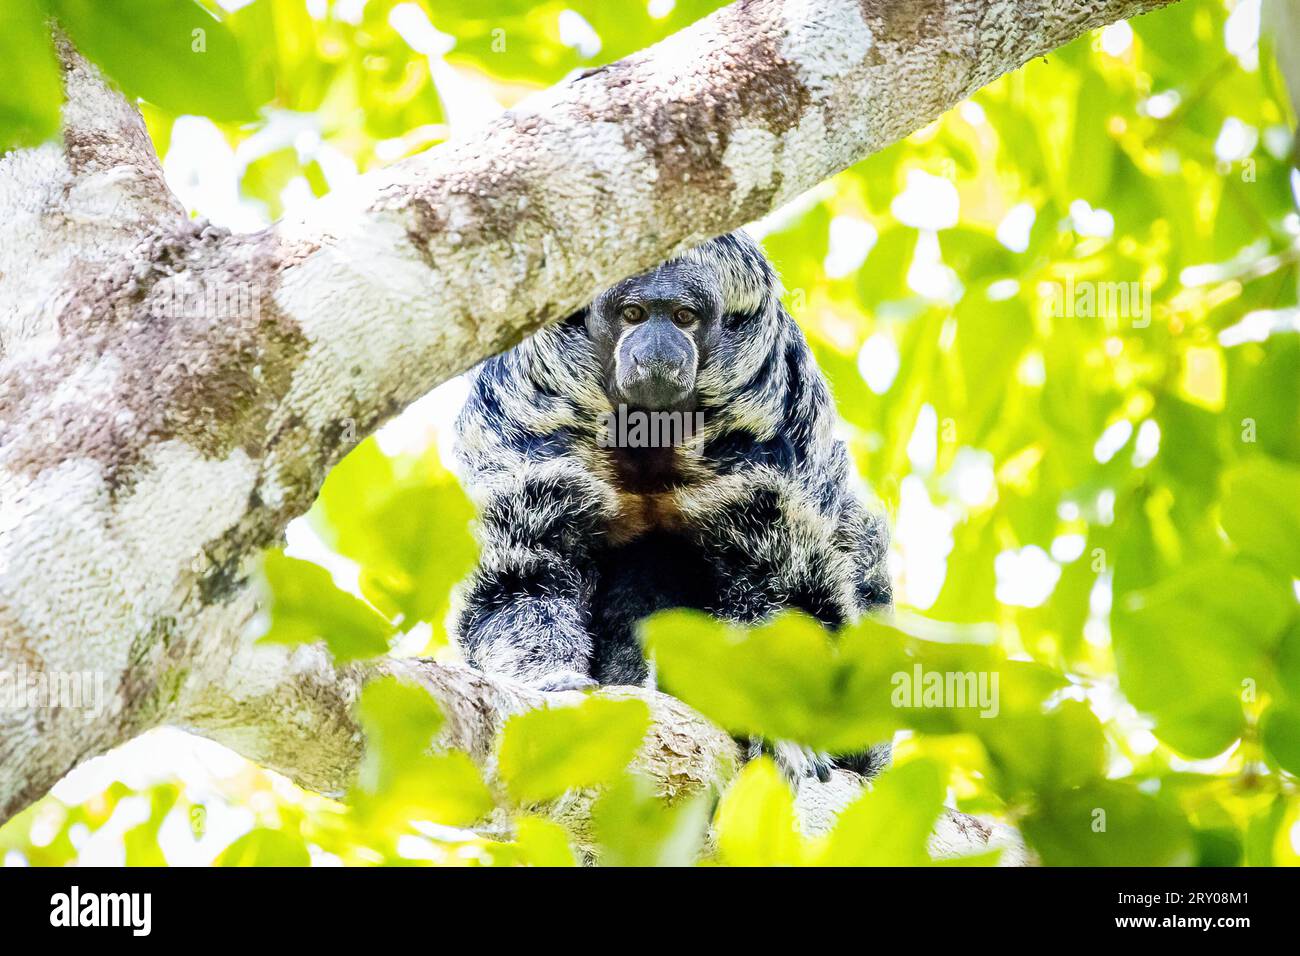 Ritratto di Grays scimmia amazzonica Saki dalla faccia calva nella giungla su un albero Foto Stock